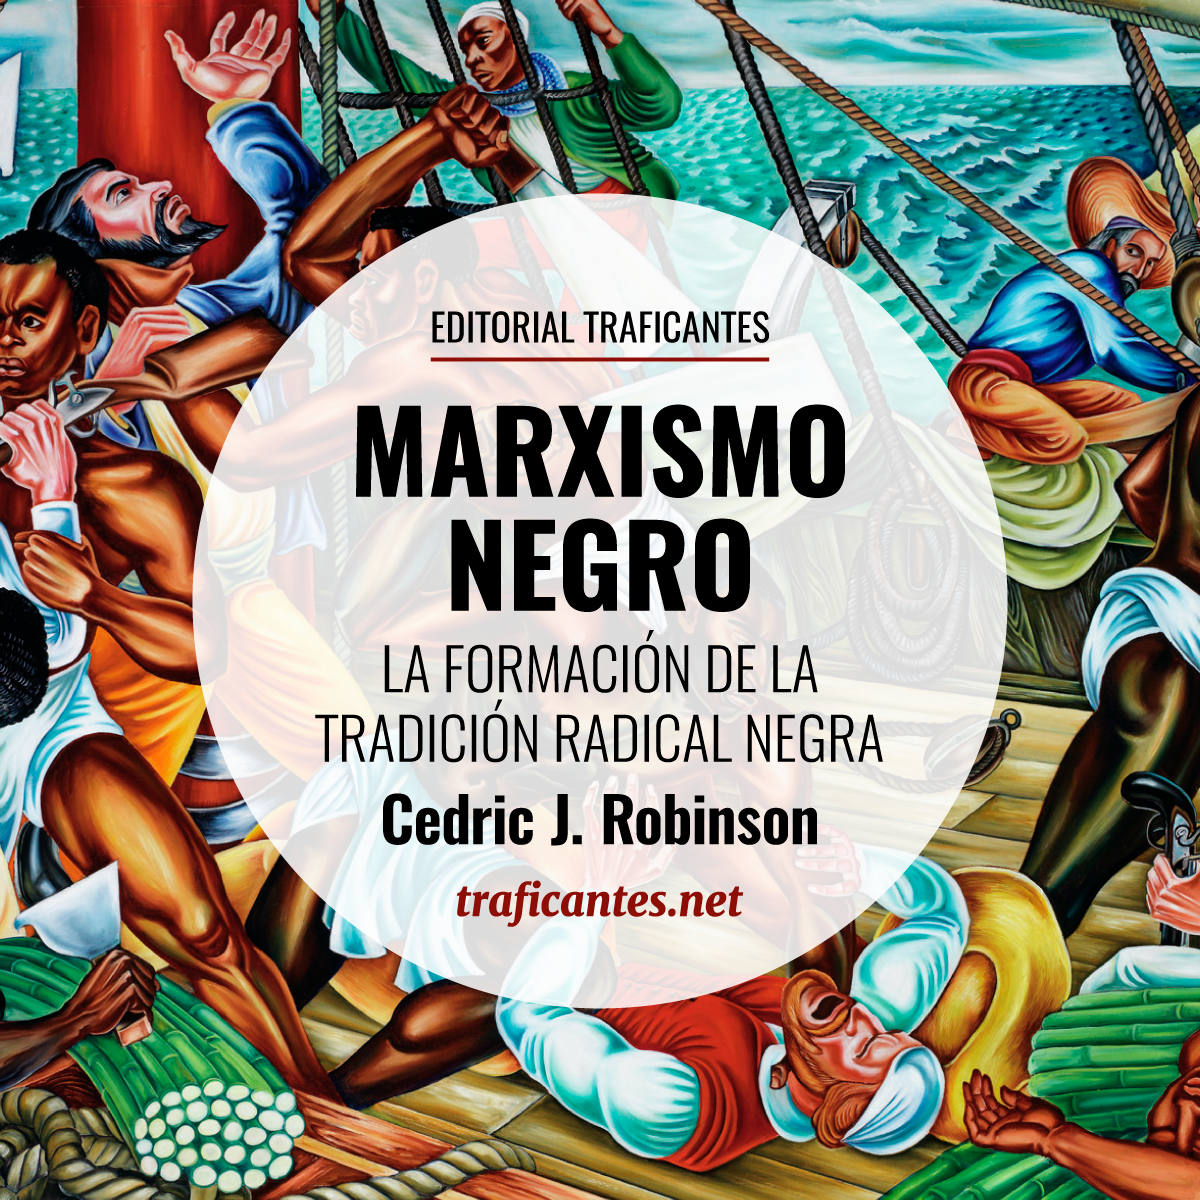 La obra de Cedric J. Robinson, esencial para entender por qué la lucha de clases es insuficiente para explicar la opresión colonialista, se traduce por fin al castellano.